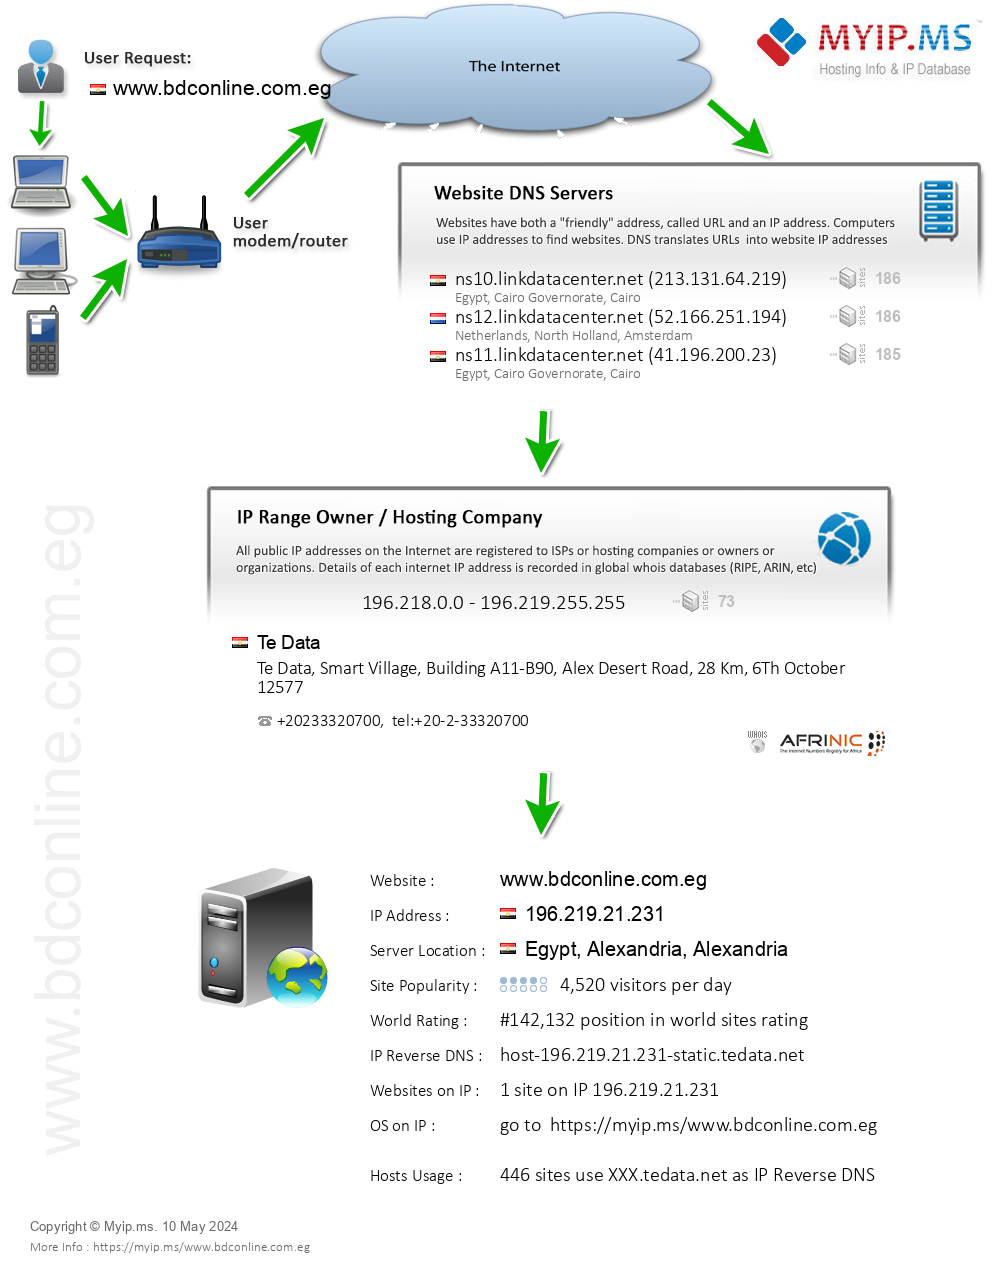 Bdconline.com.eg - Website Hosting Visual IP Diagram